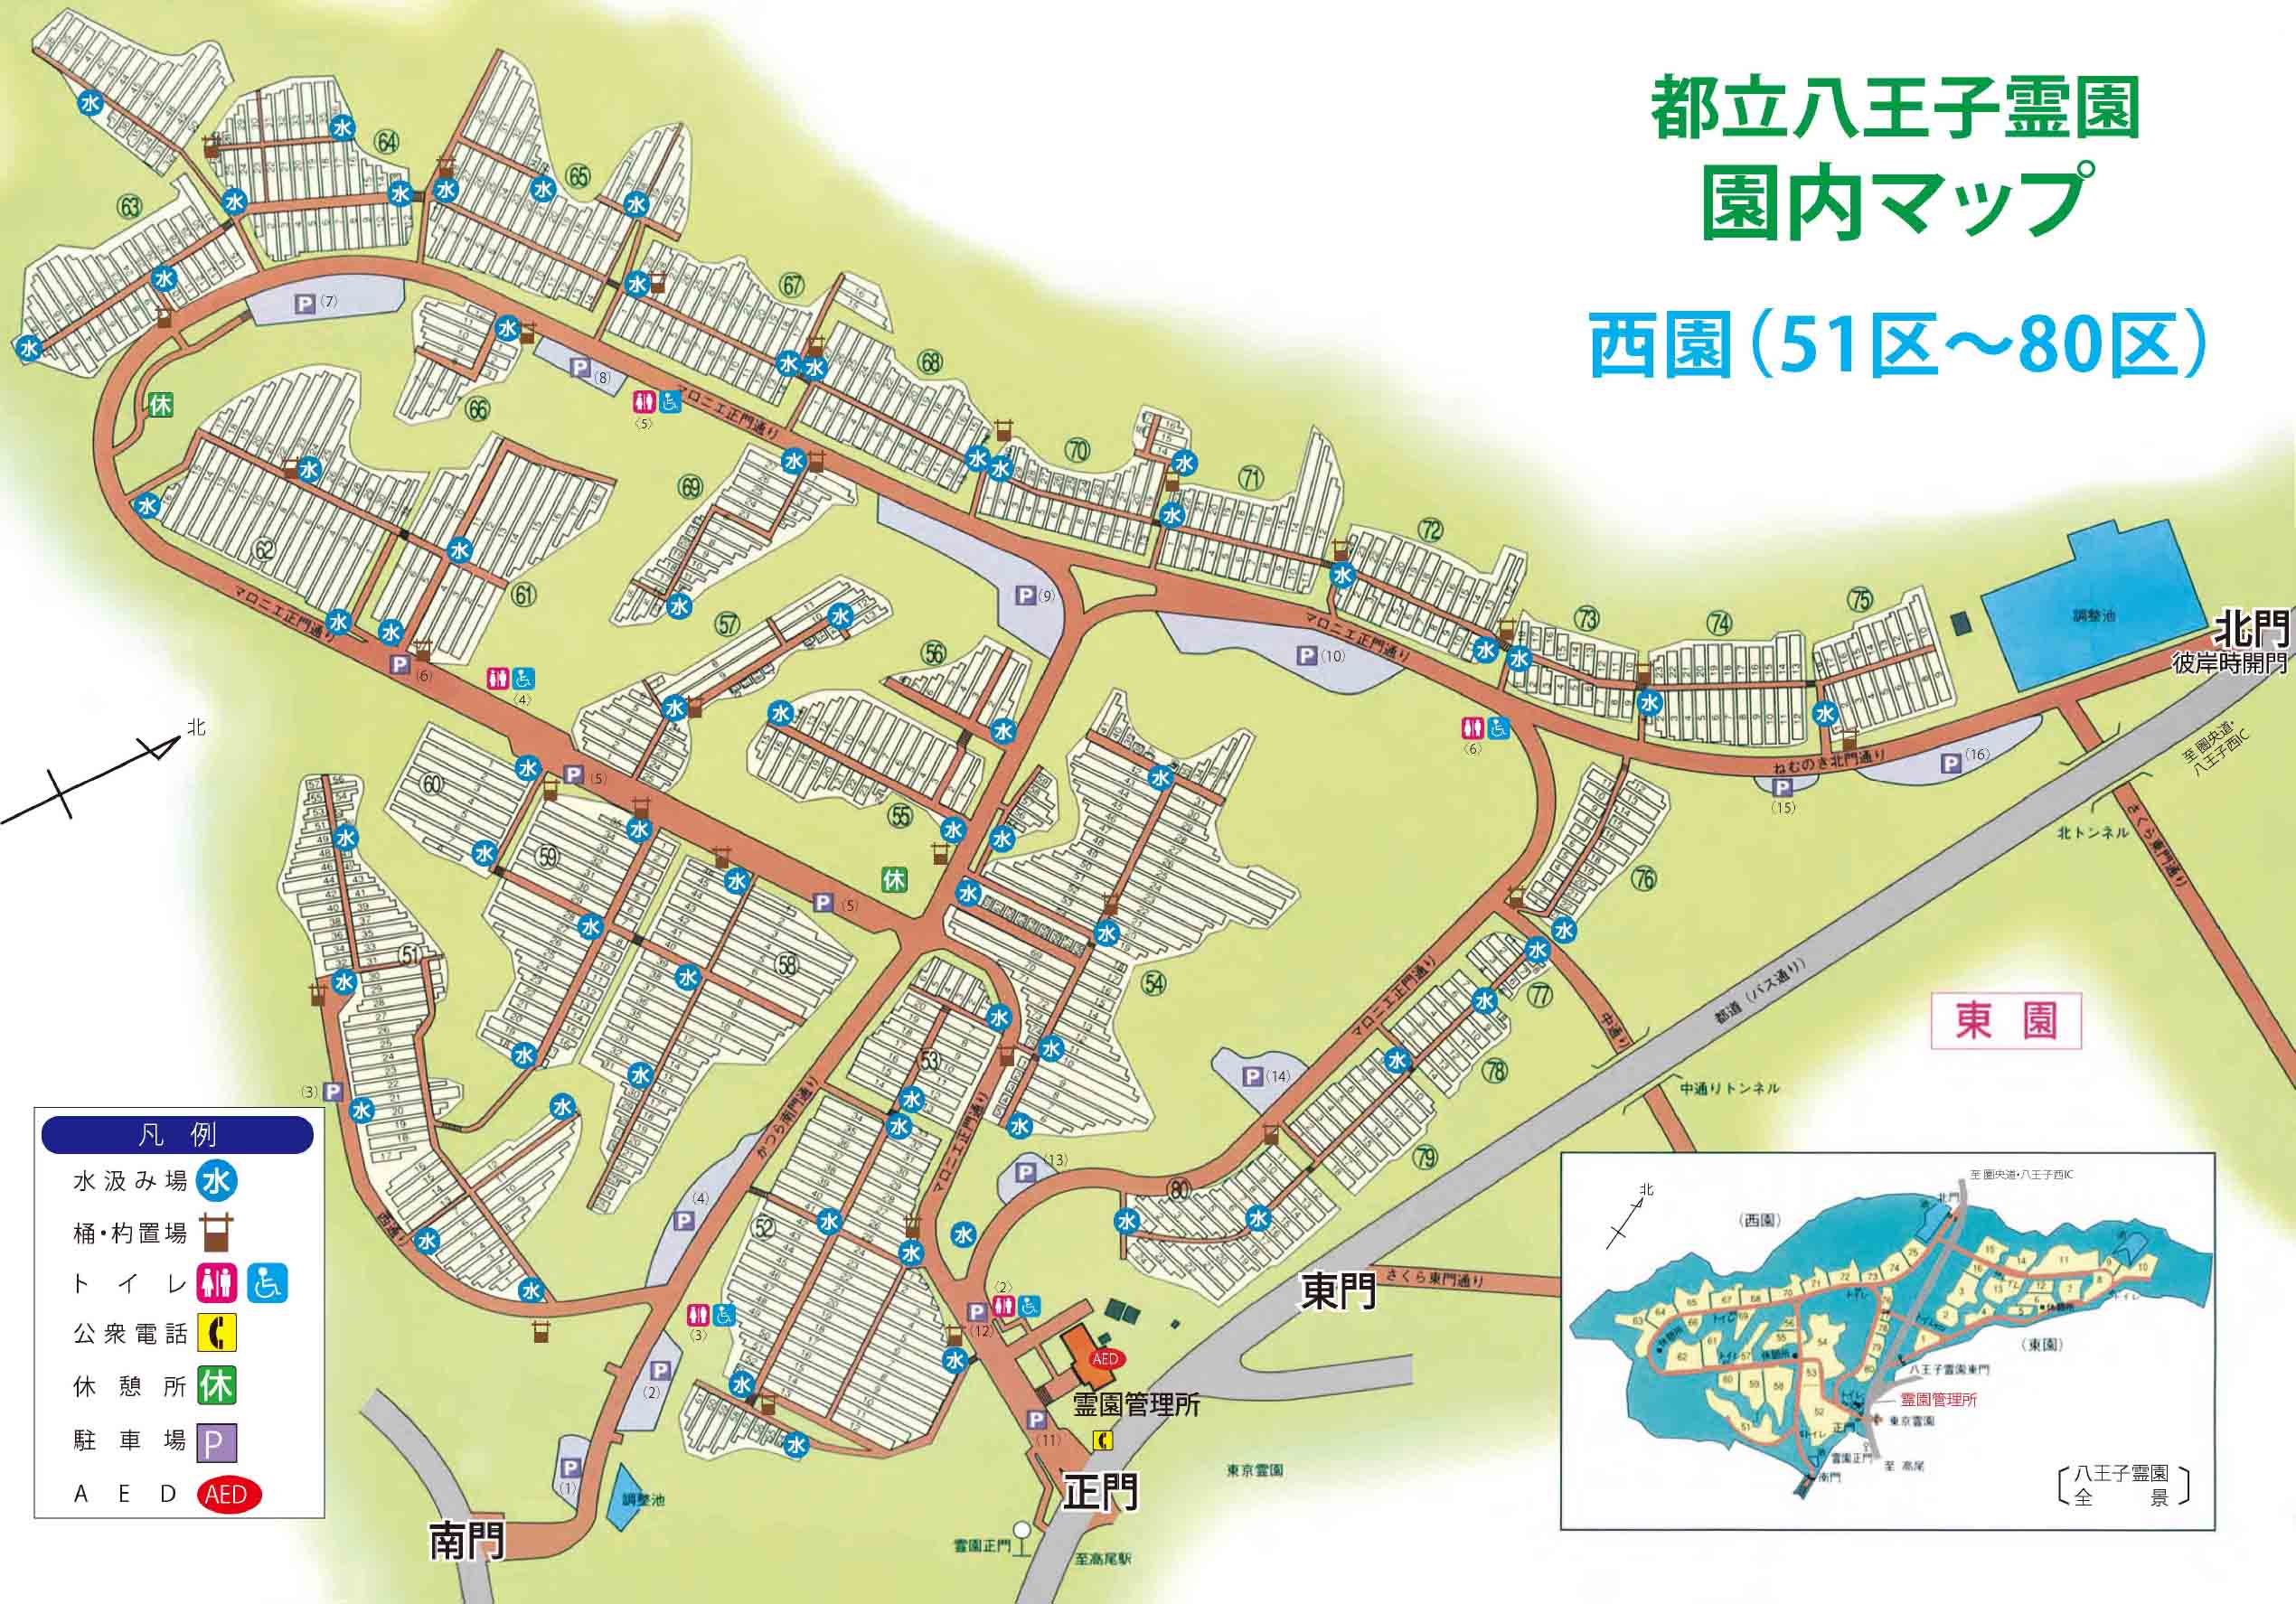 八王子霊園 園内マップ2